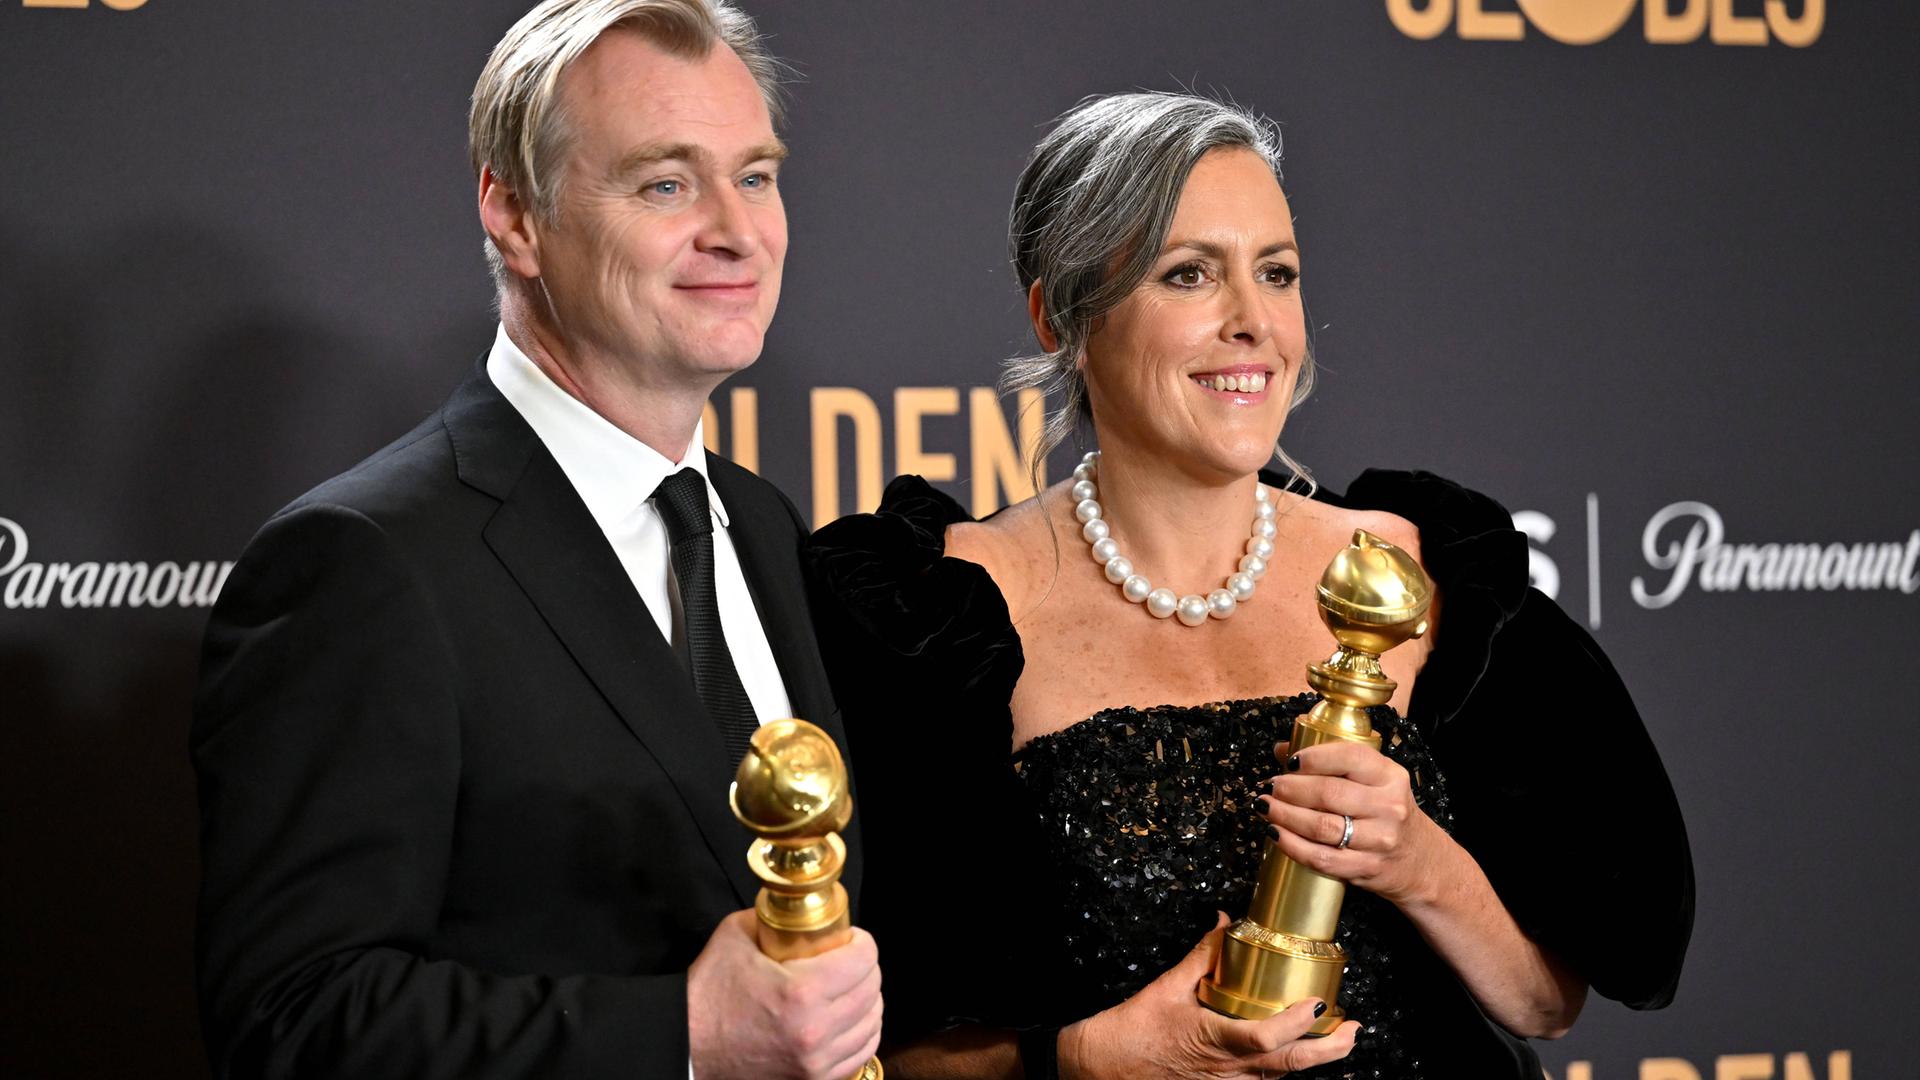 Christopher Nolan und Emma Thomas zeigen ihre Golden Globes